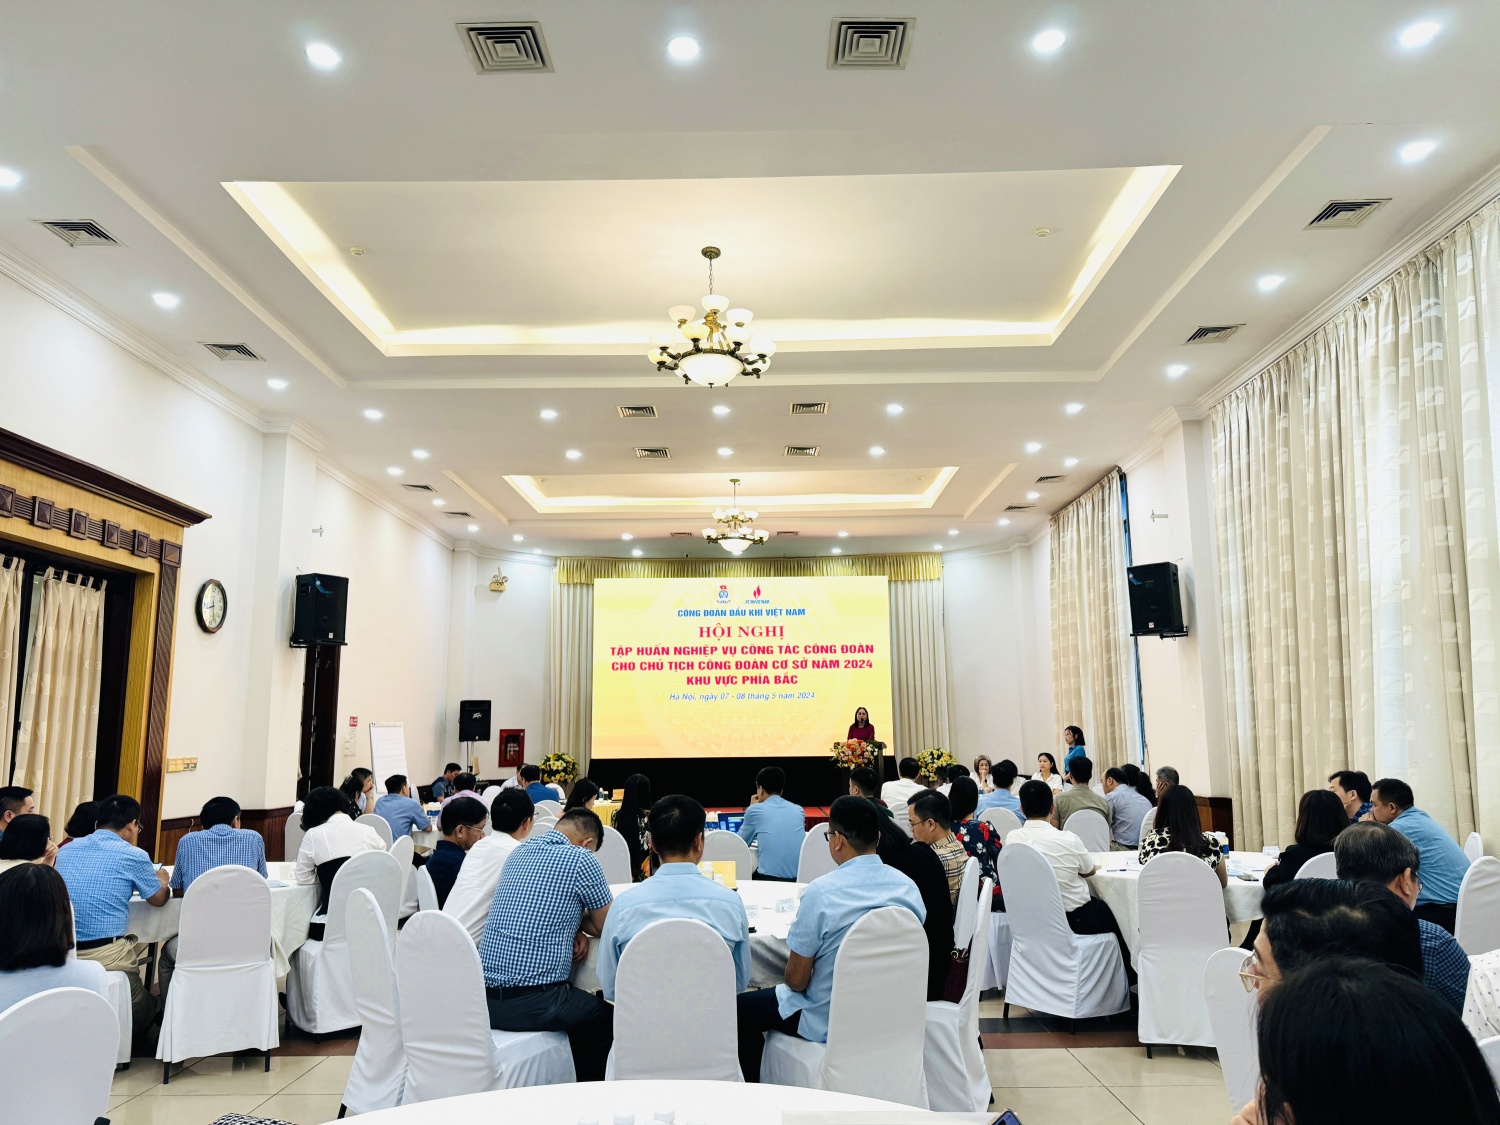 Công đoàn Dầu khí Việt Nam tổ chức tập huấn về nghiệp vụ cho chủ tịch công đoàn năm 2024